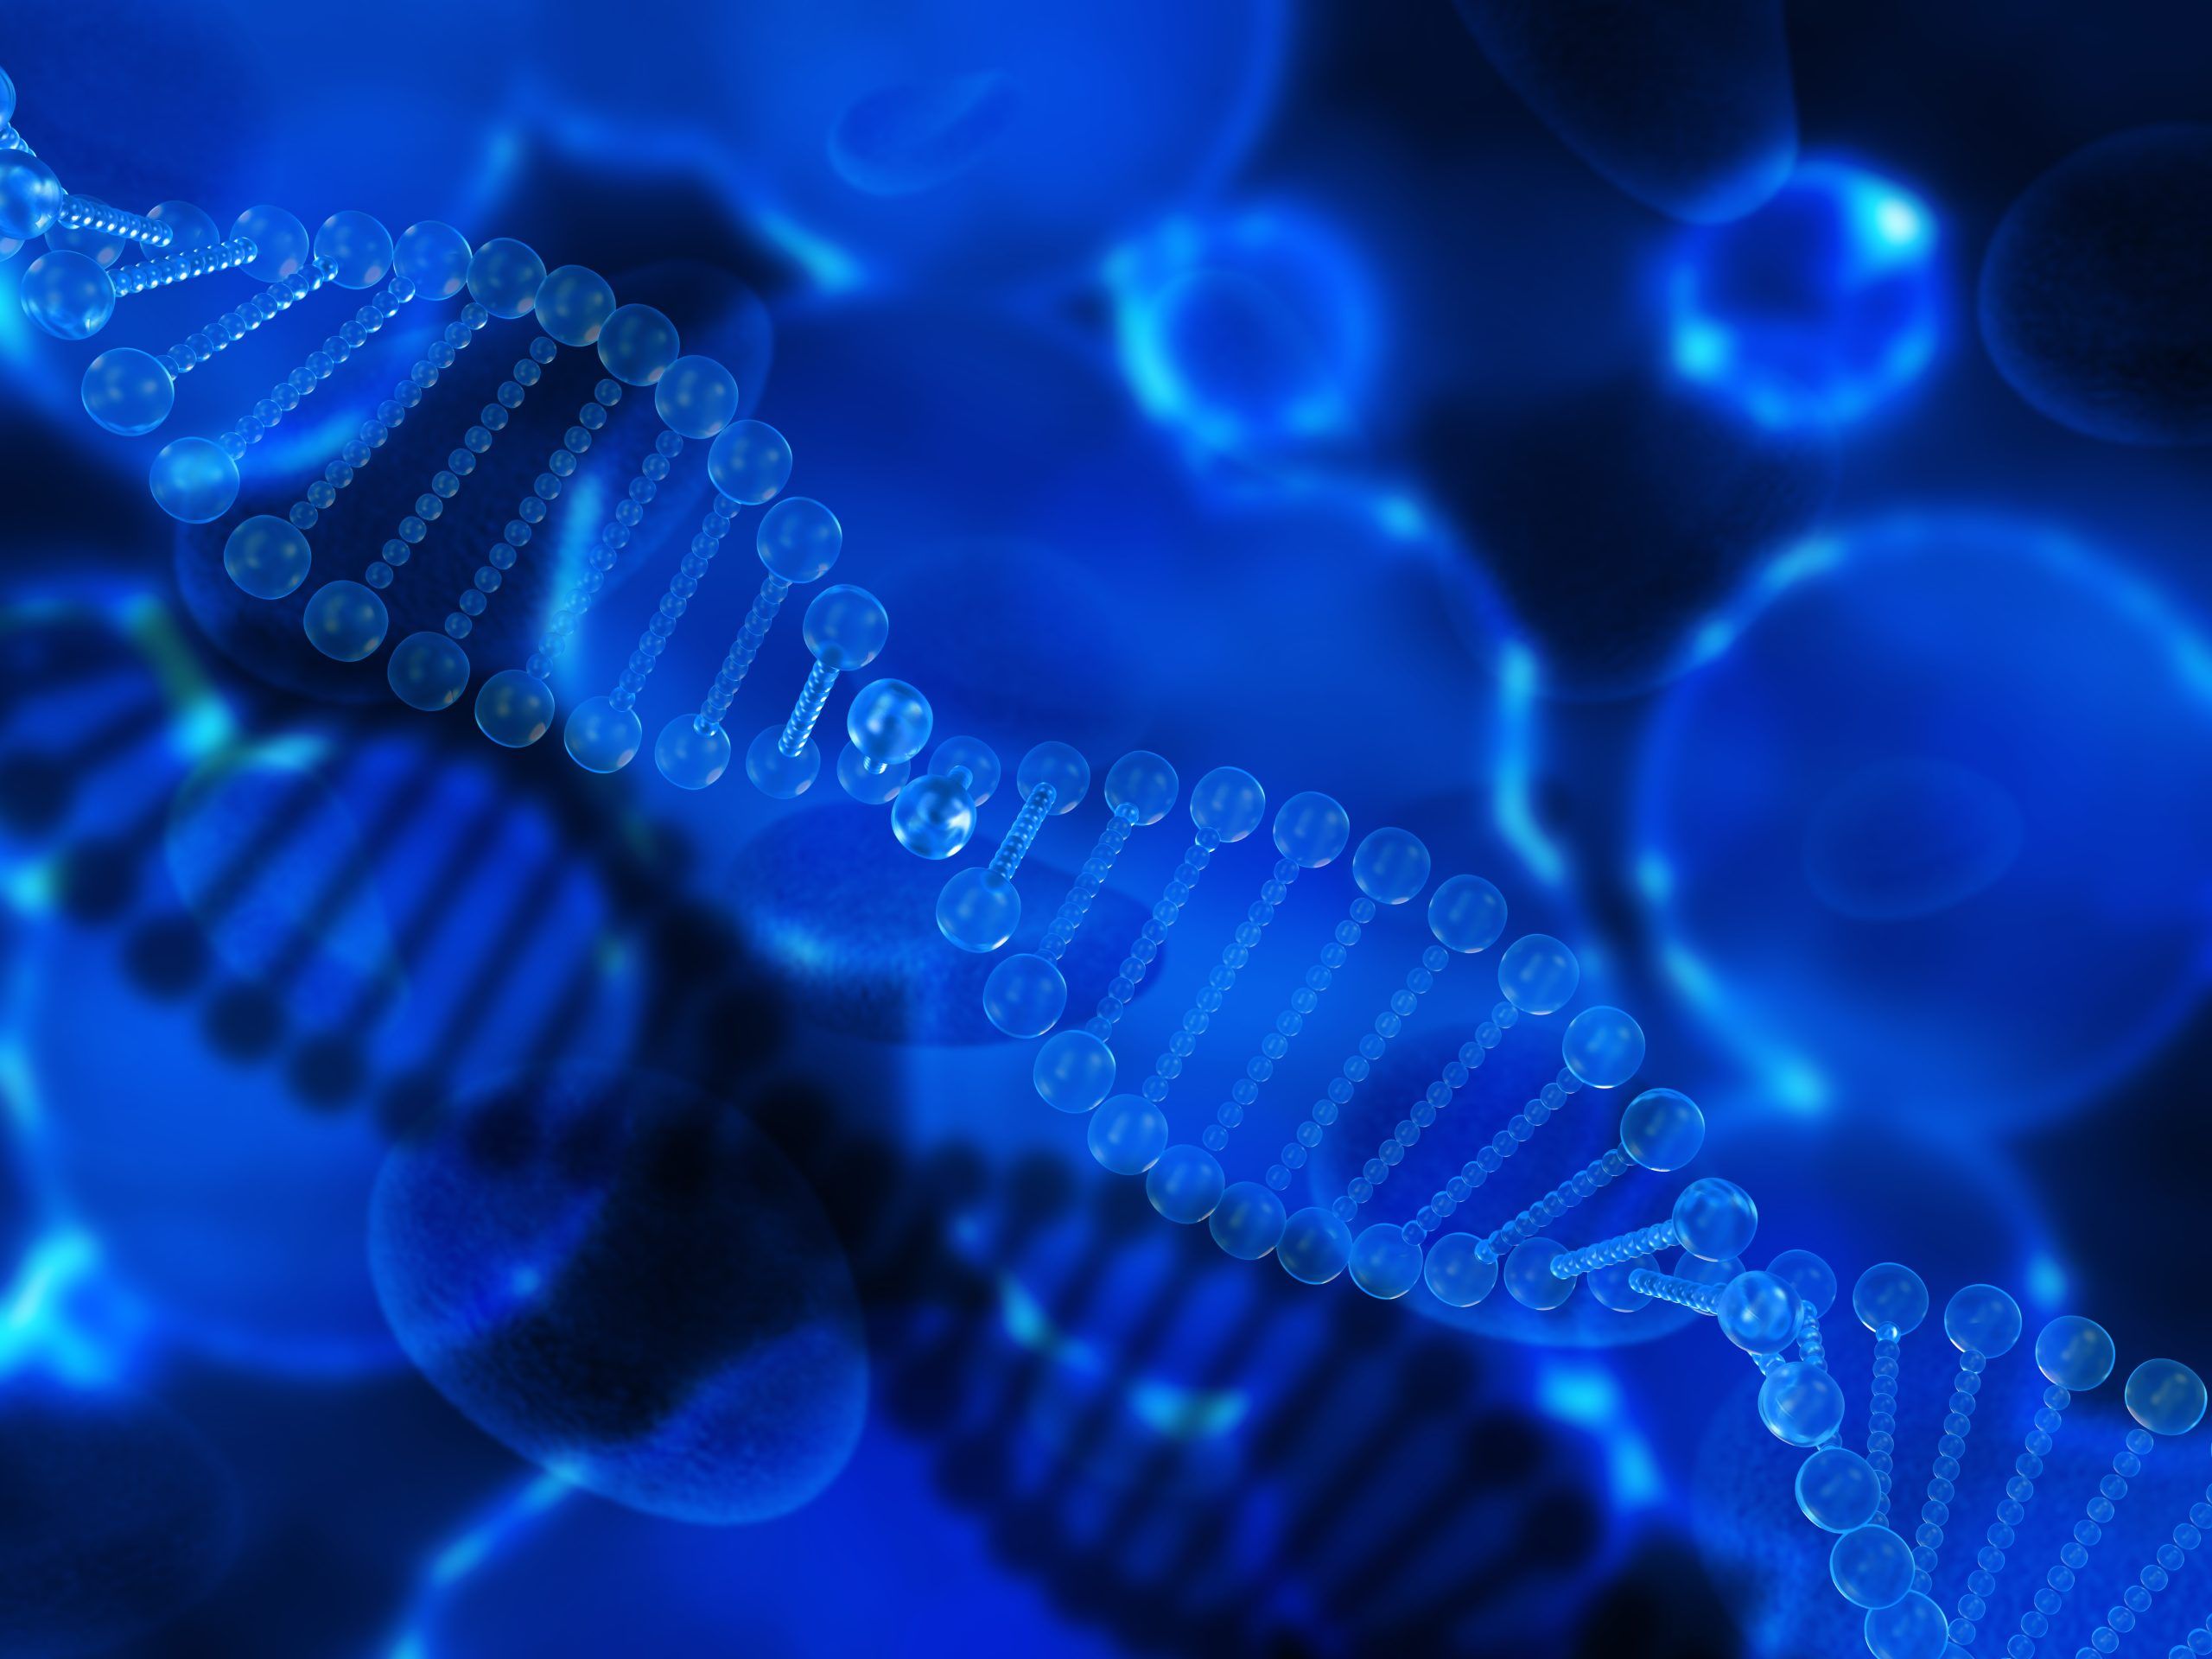 ДНК/РНК технологии и биоинформатика также входят в сферу ответственности биобанкирования